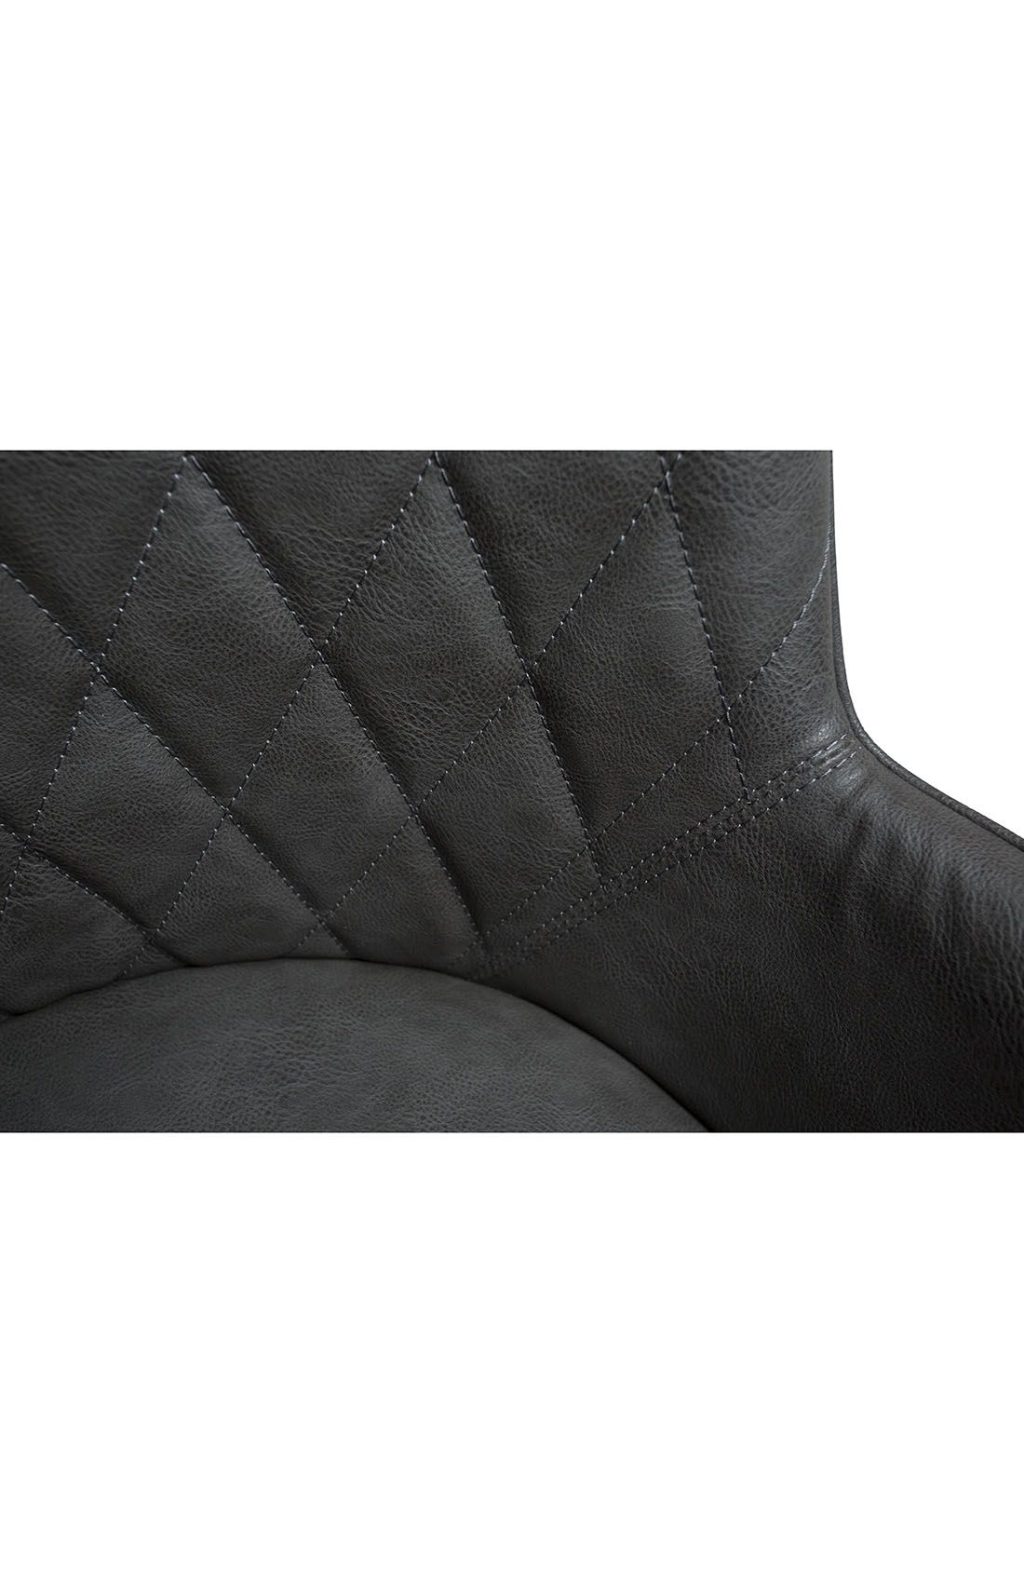 Pelēkas ādas sēžamā daļa ar melnām metāla kājām.